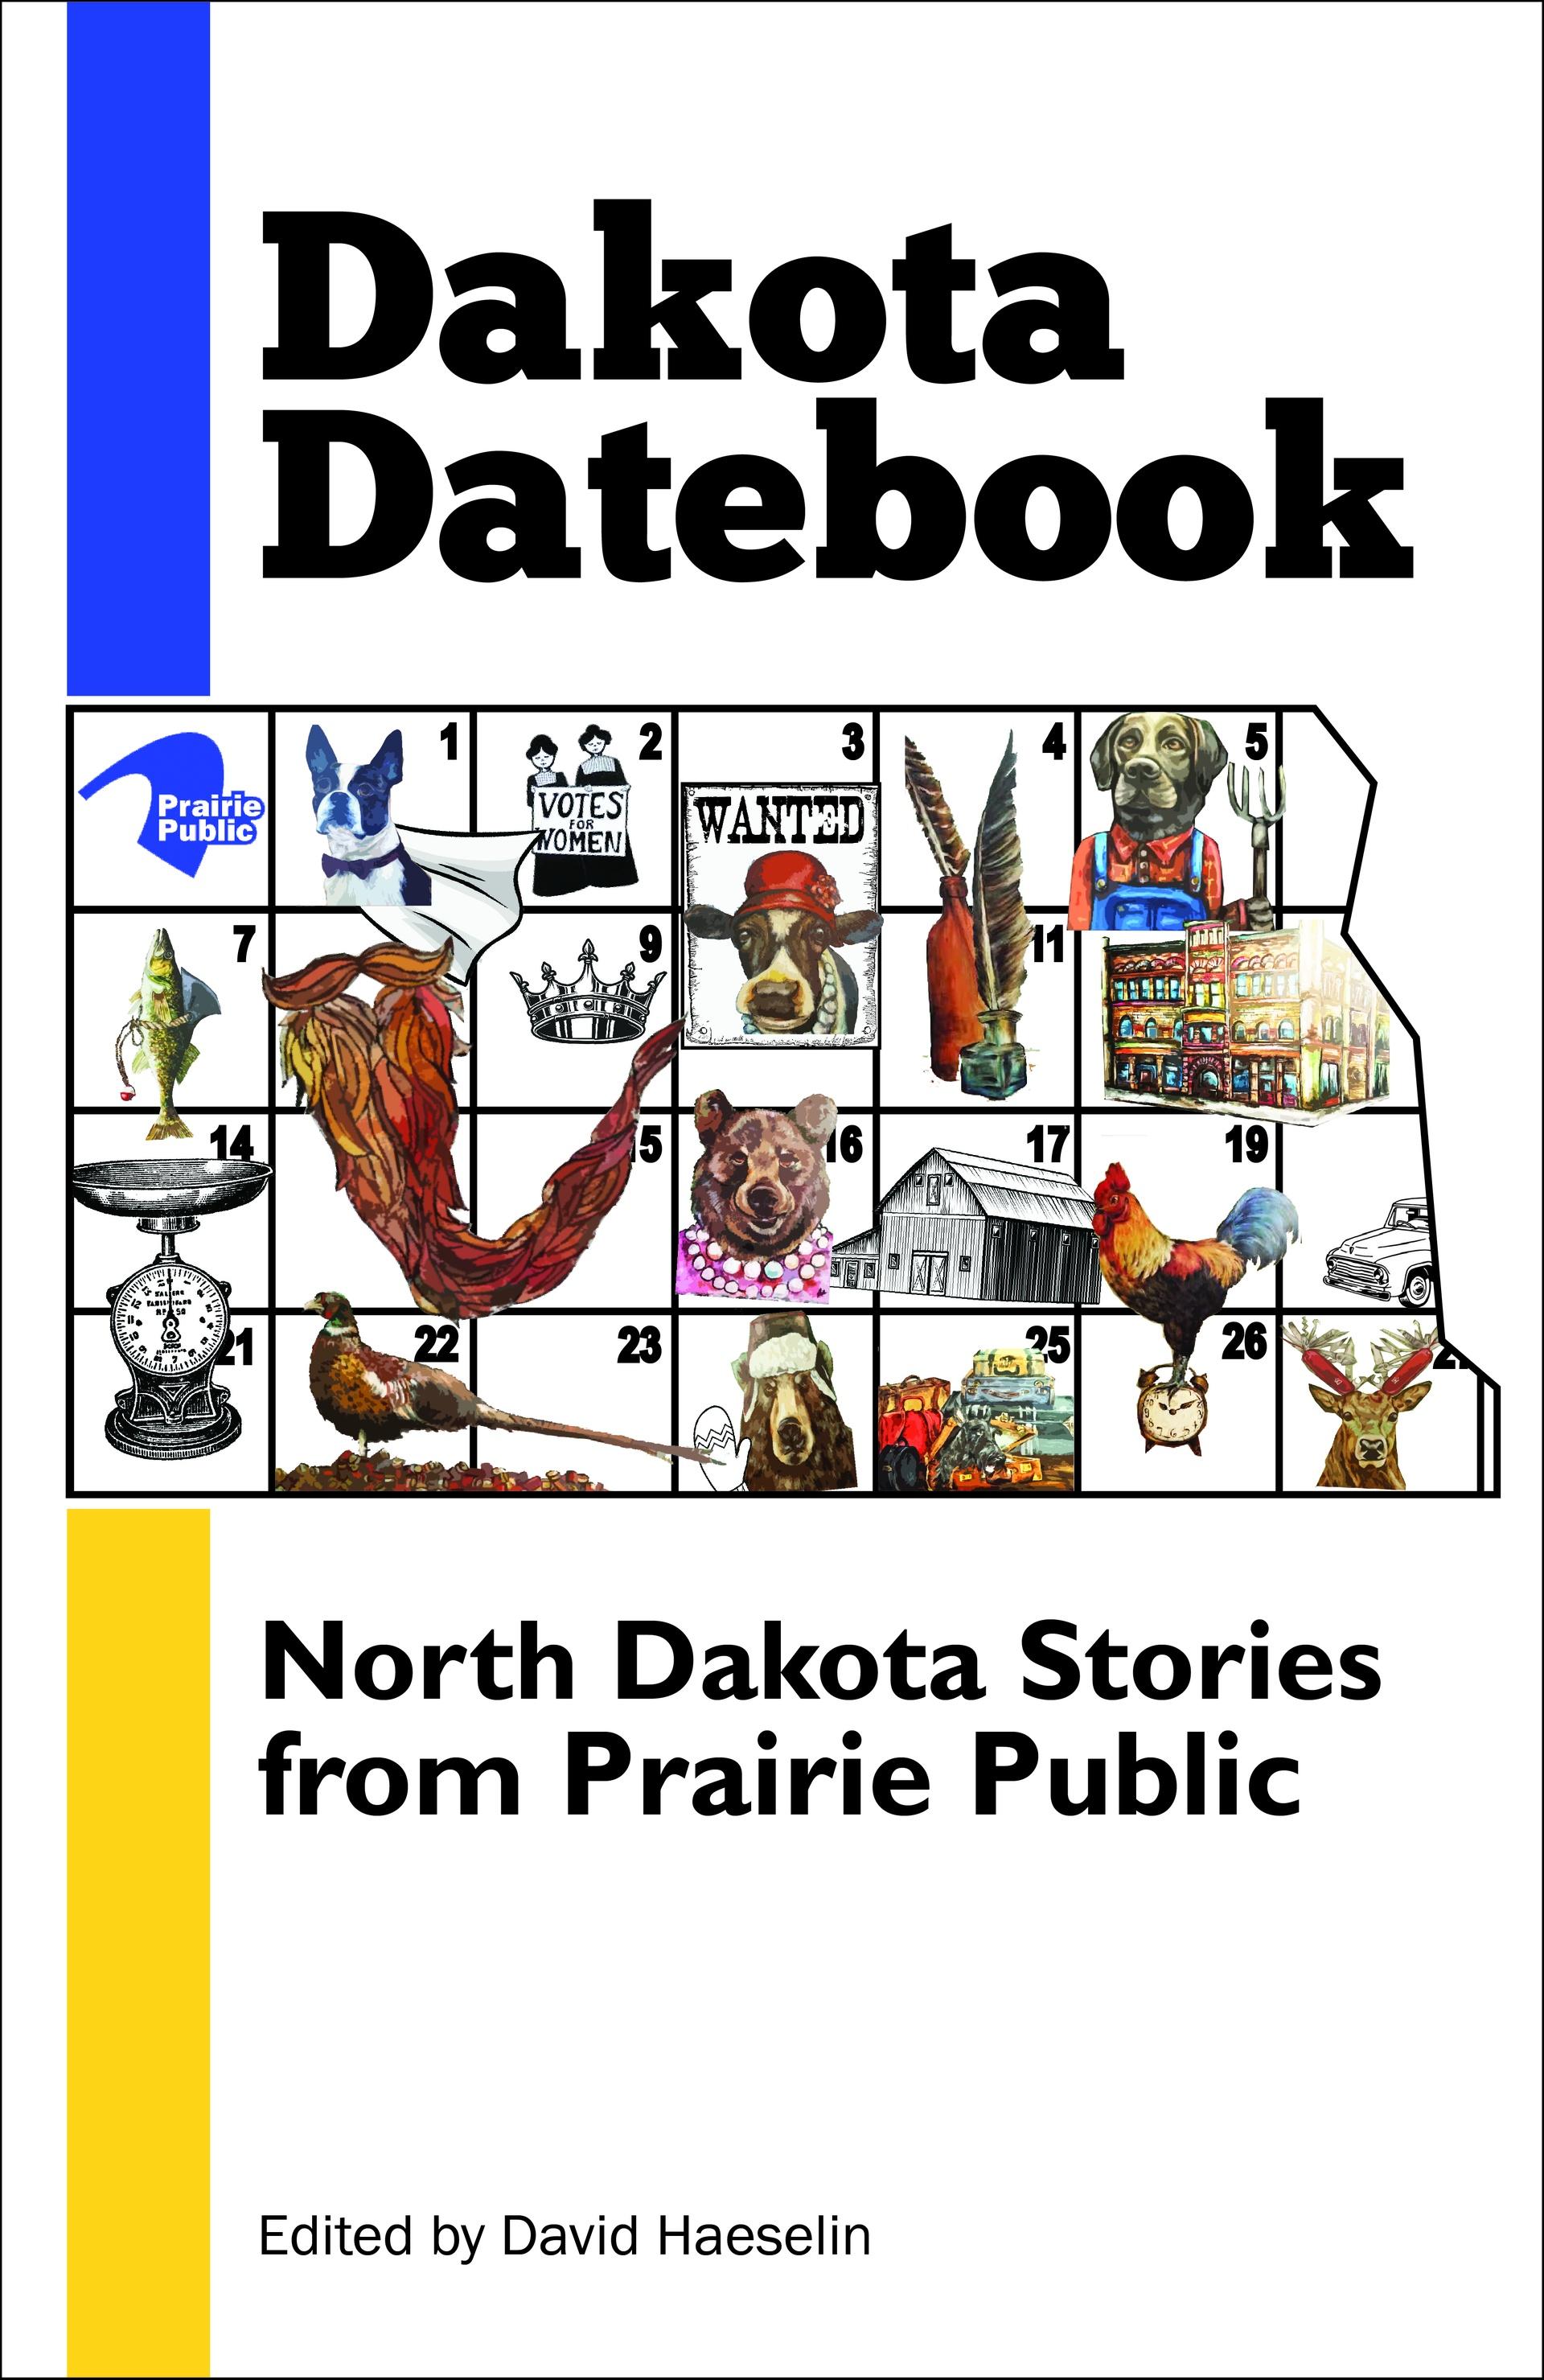 Dakota Datebooks 1 & 2 Image